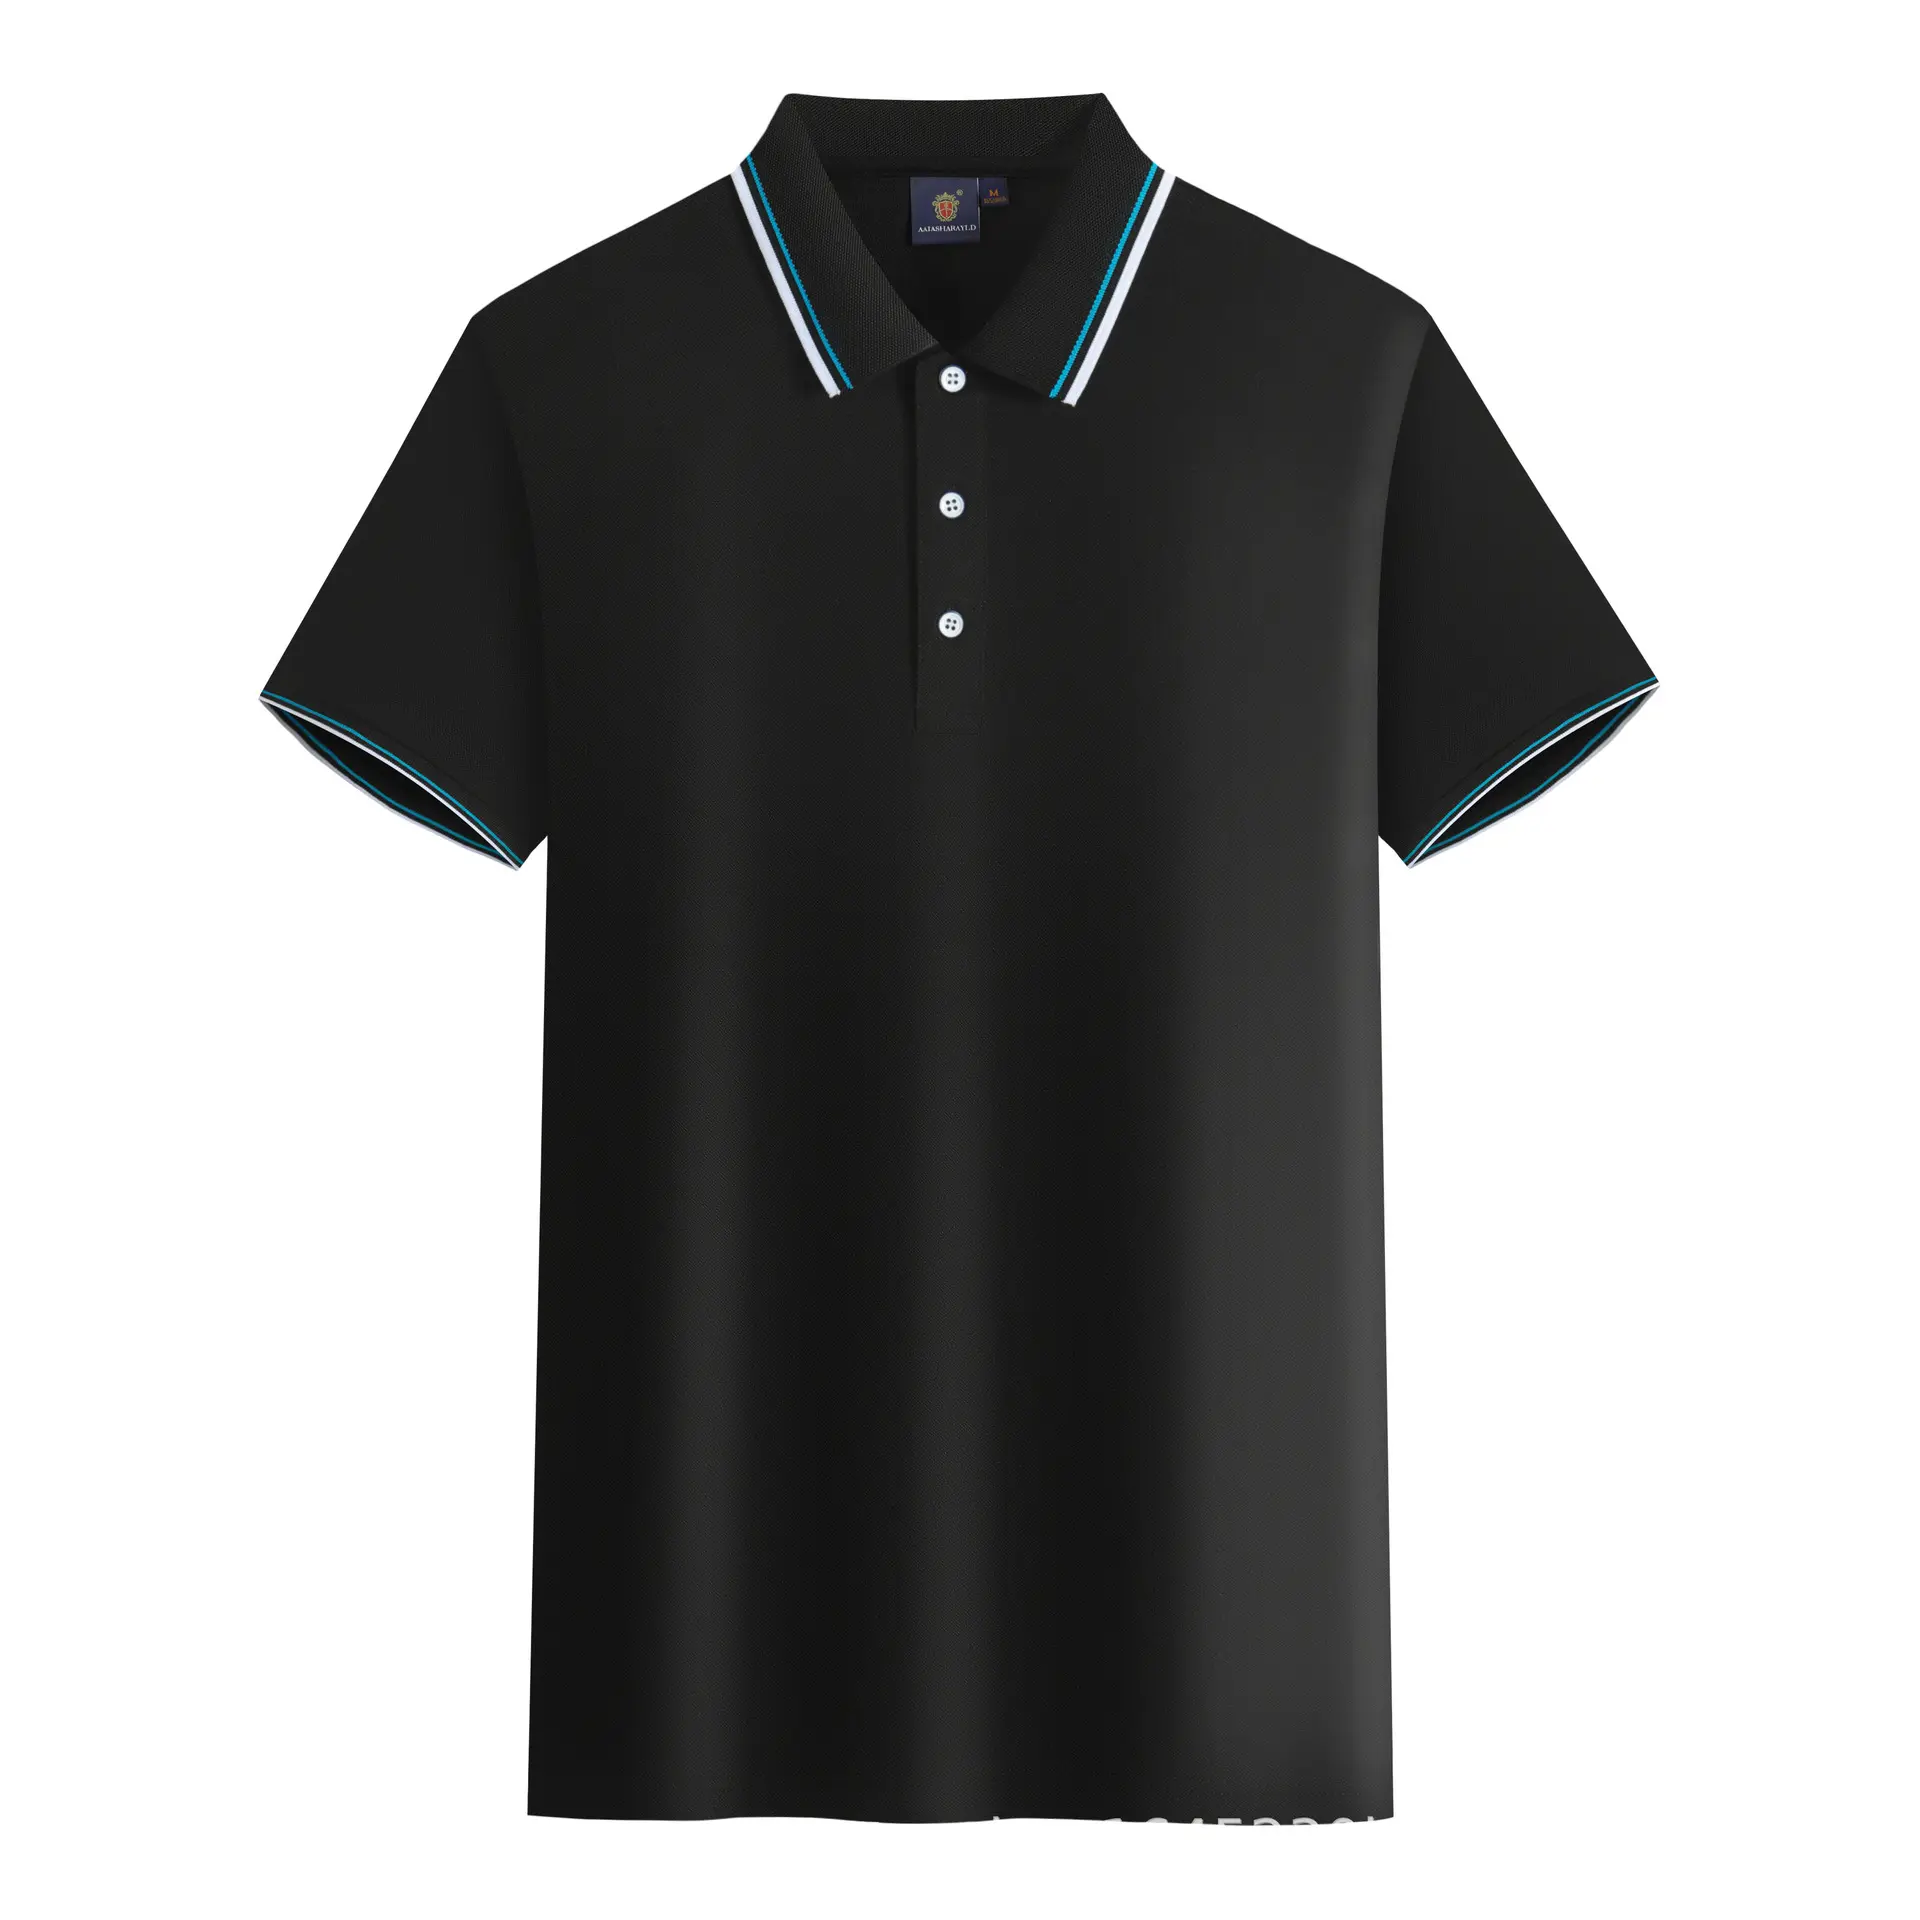 Mens पोलो शर्ट खेल आकस्मिक लघु आस्तीन गोल्फ टेनिस कस्टम मुद्रित कढ़ाई सस्ते गर्मियों खेल टी शर्ट